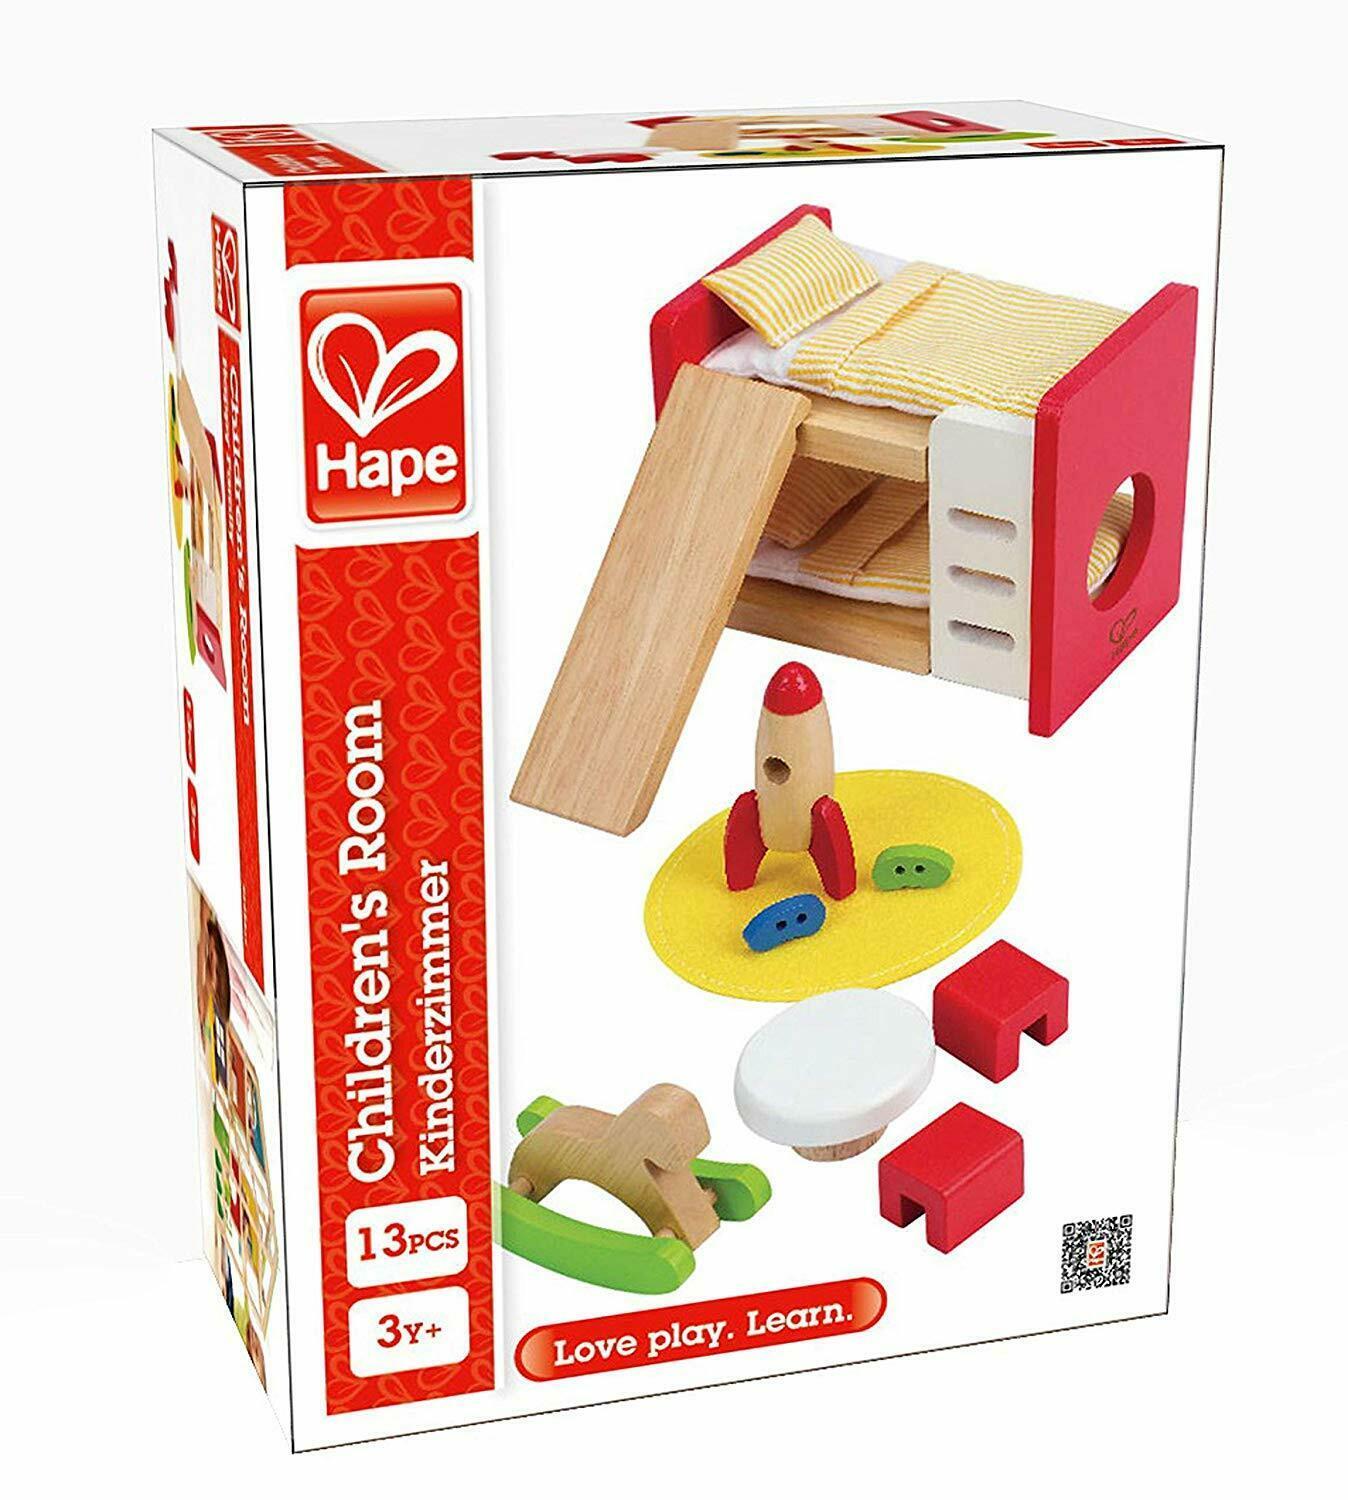 Hape Children's bedroom set in manufacturer's packaging